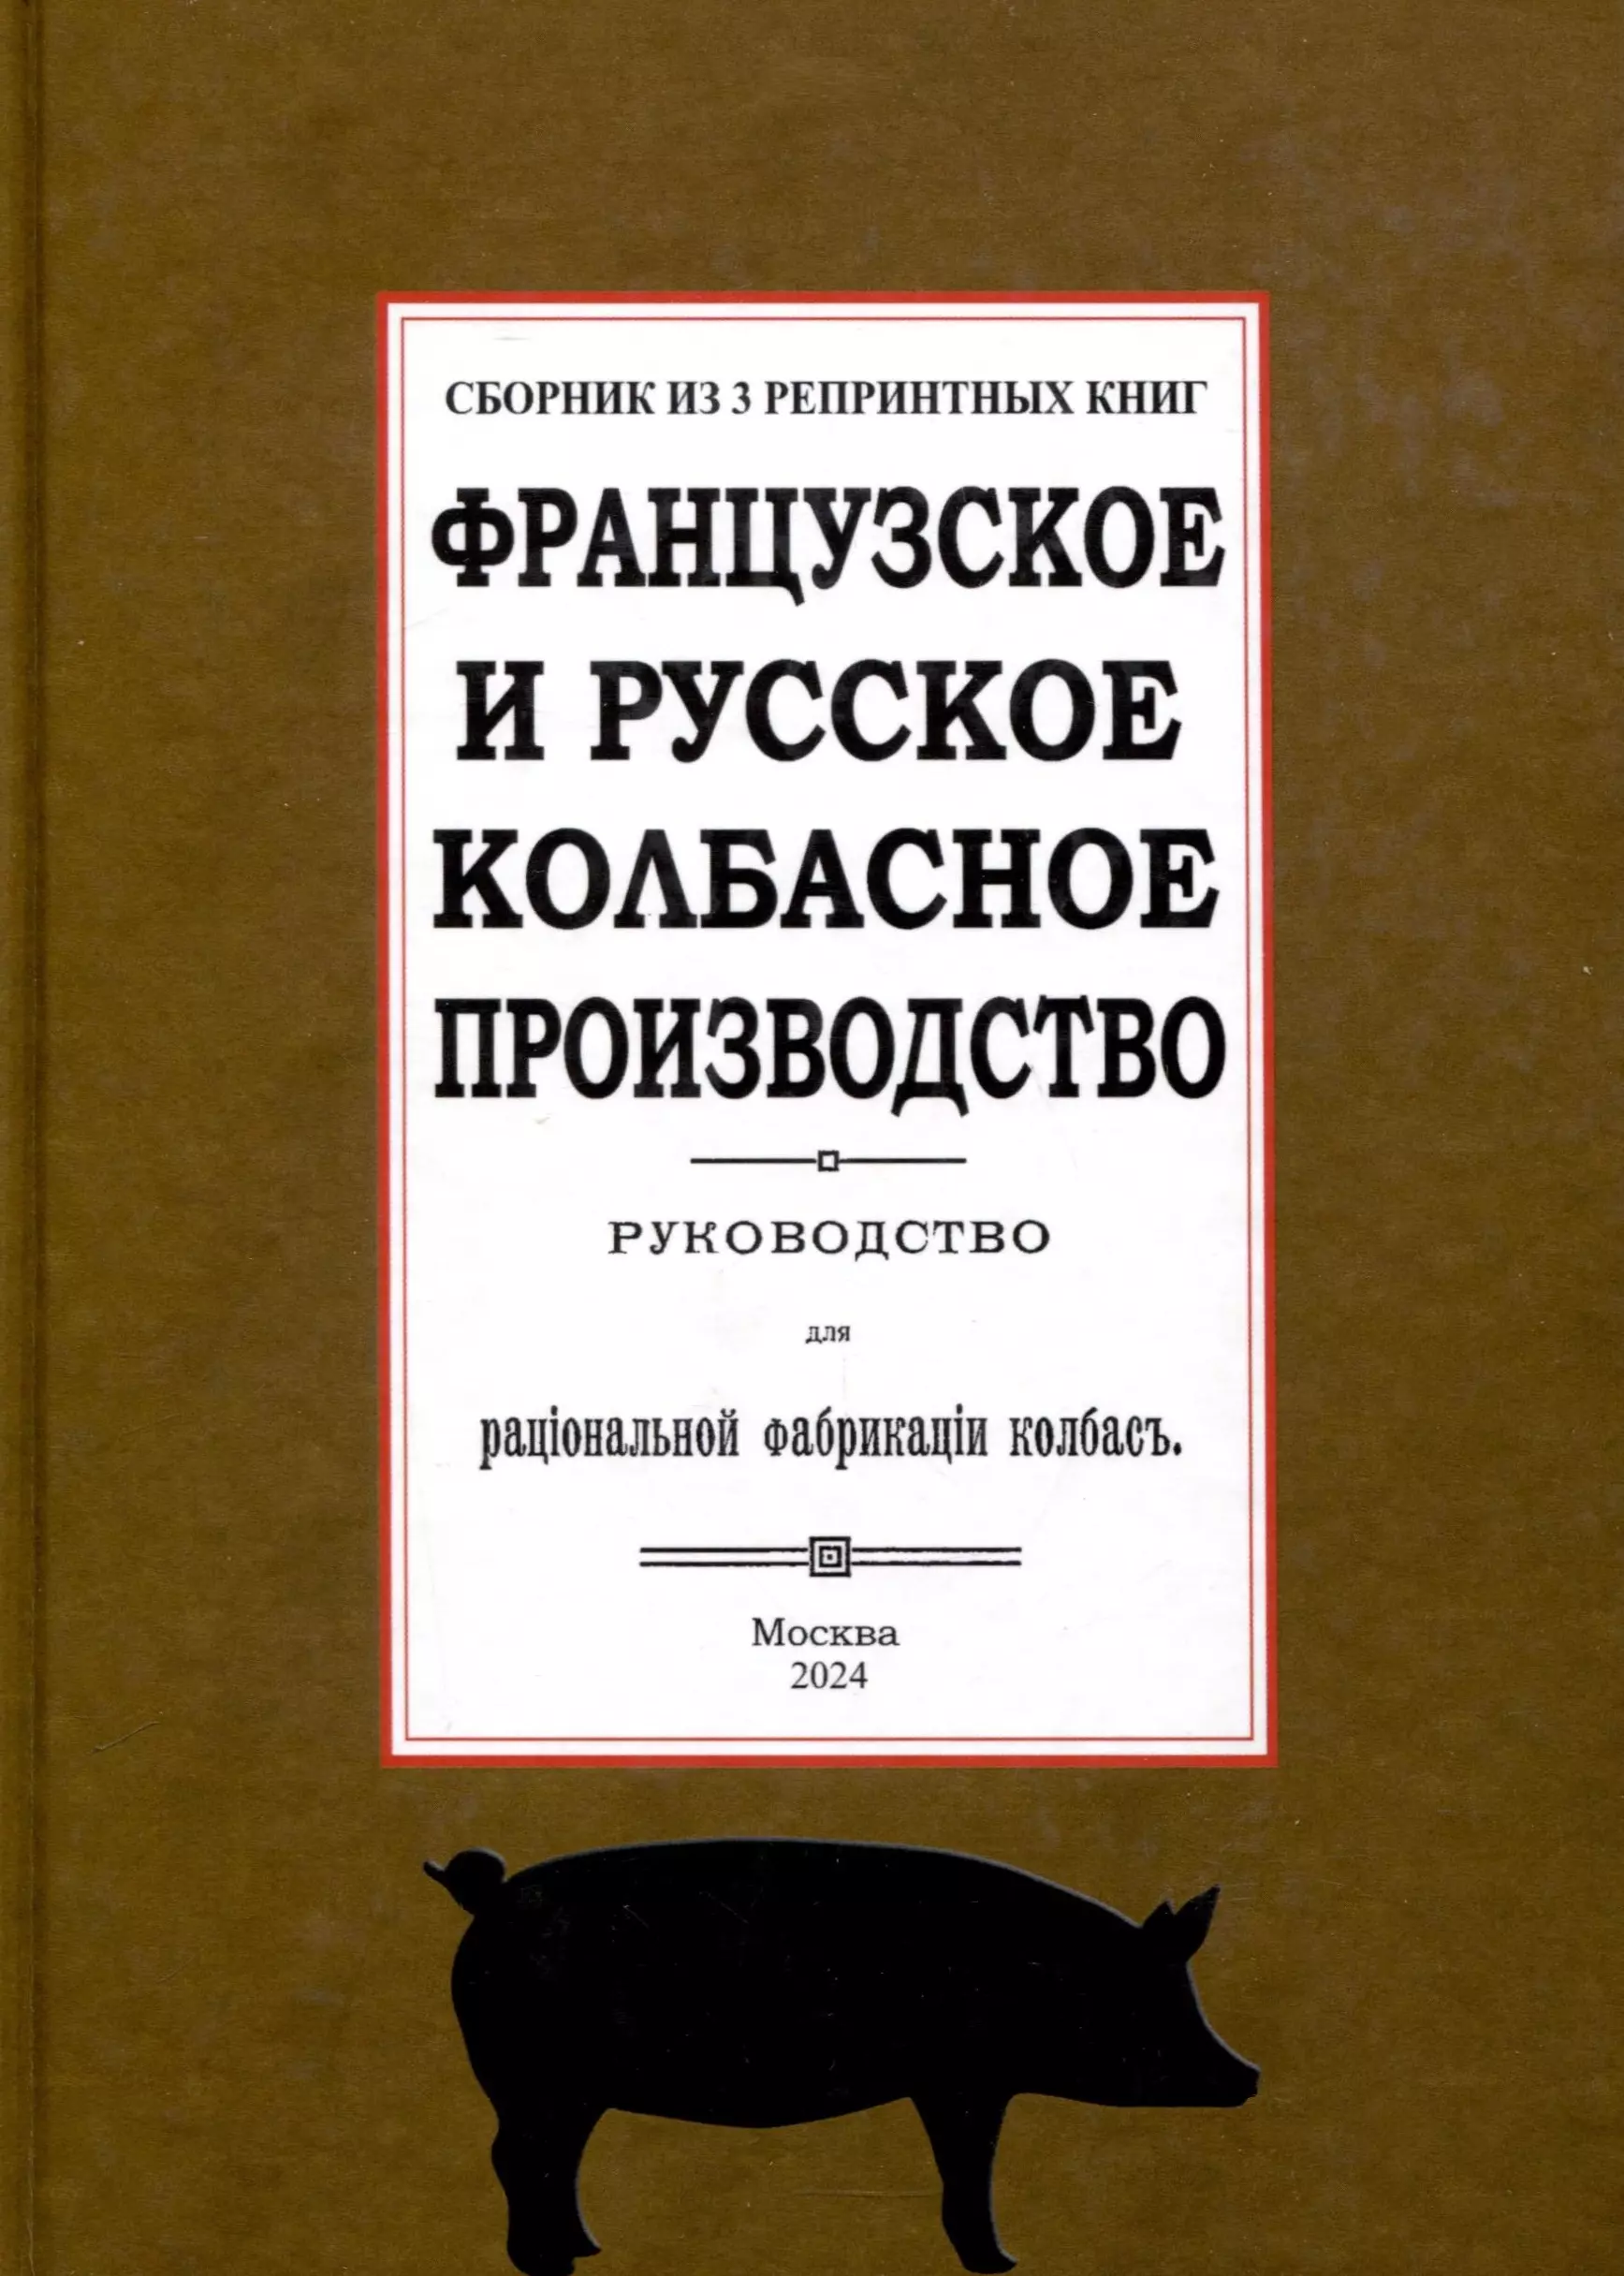 

Французское и русское колбасное производство (сборник 3 репринтных книг)